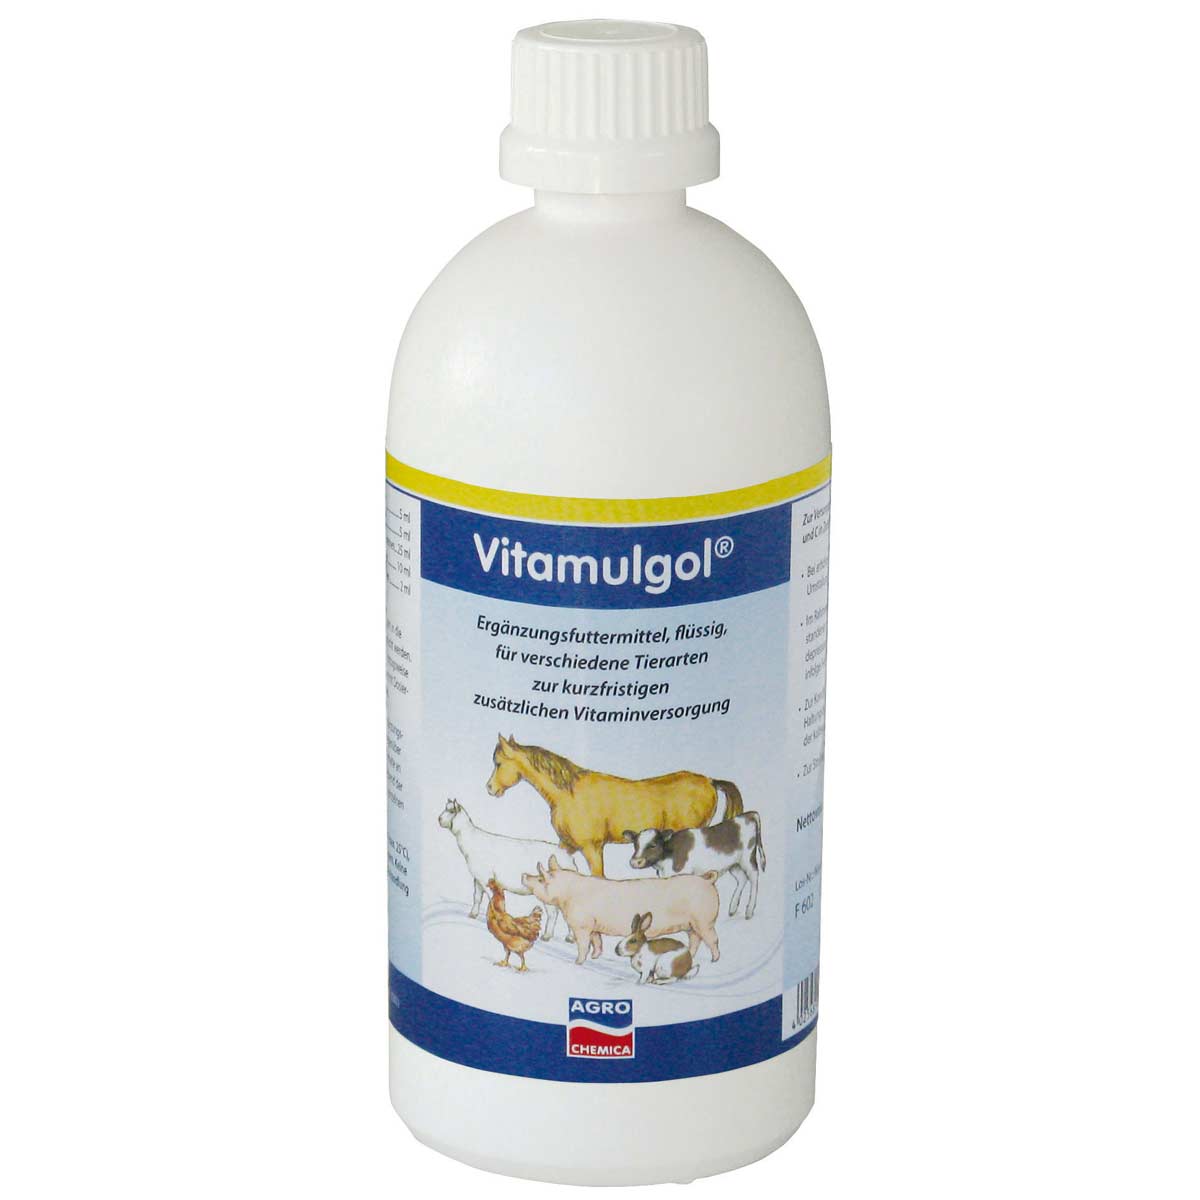 Vitamulgol Liquid concentrato vitaminico 500 ml